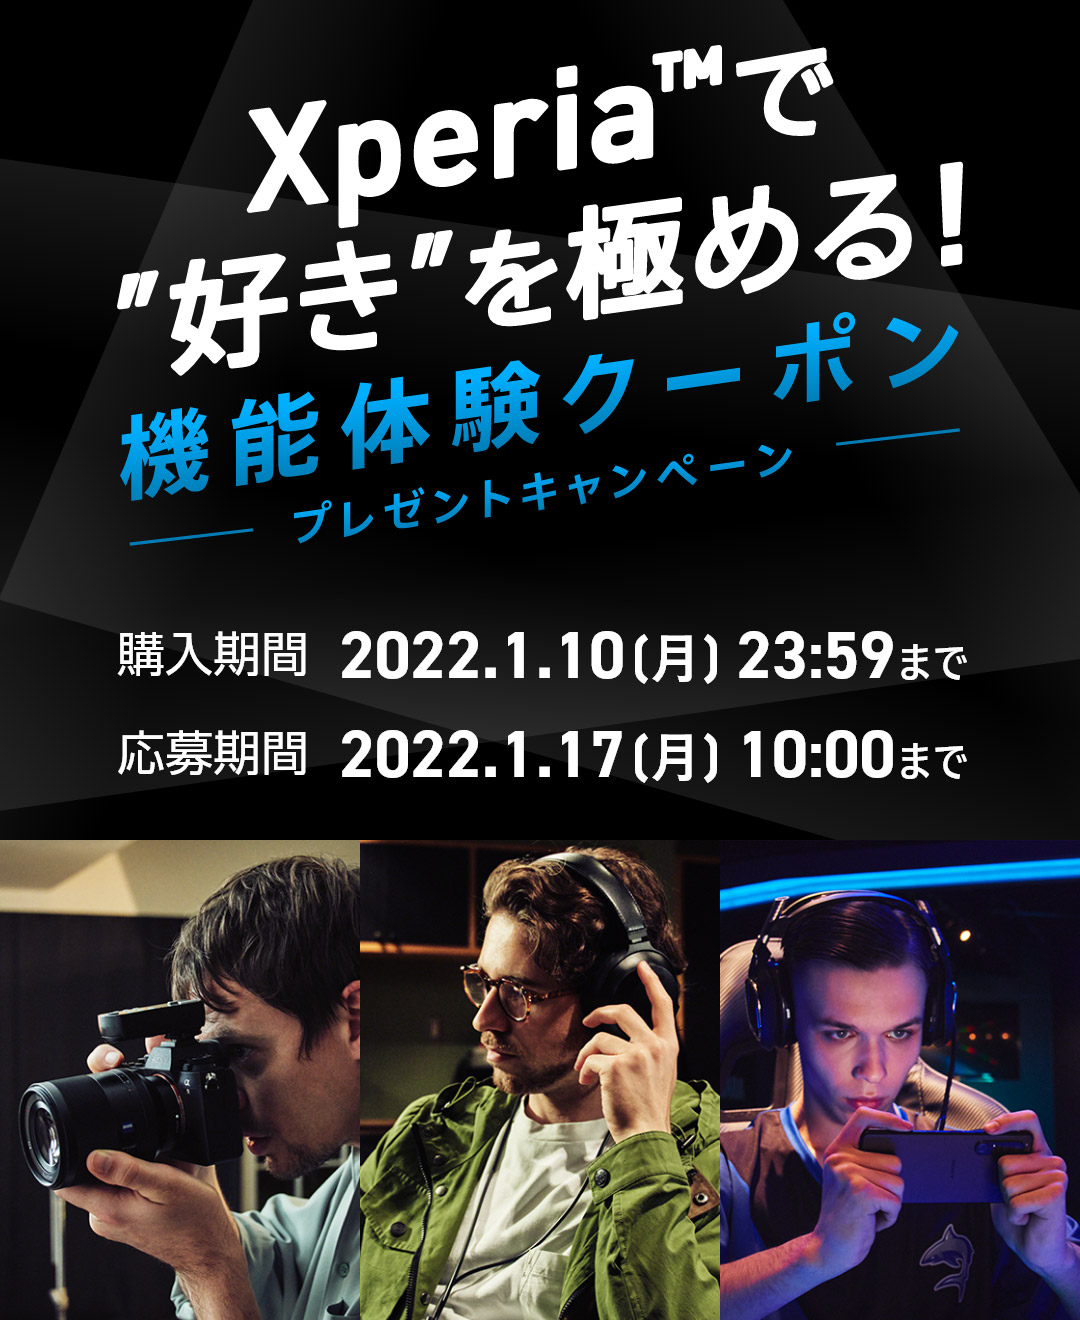 Xperia™で”好き”を極める！機能体験クーポンプレゼントキャンペーン 購入期間：2022.1.10[月]23:59まで 応募期間：2022.1.17[月]10:00まで